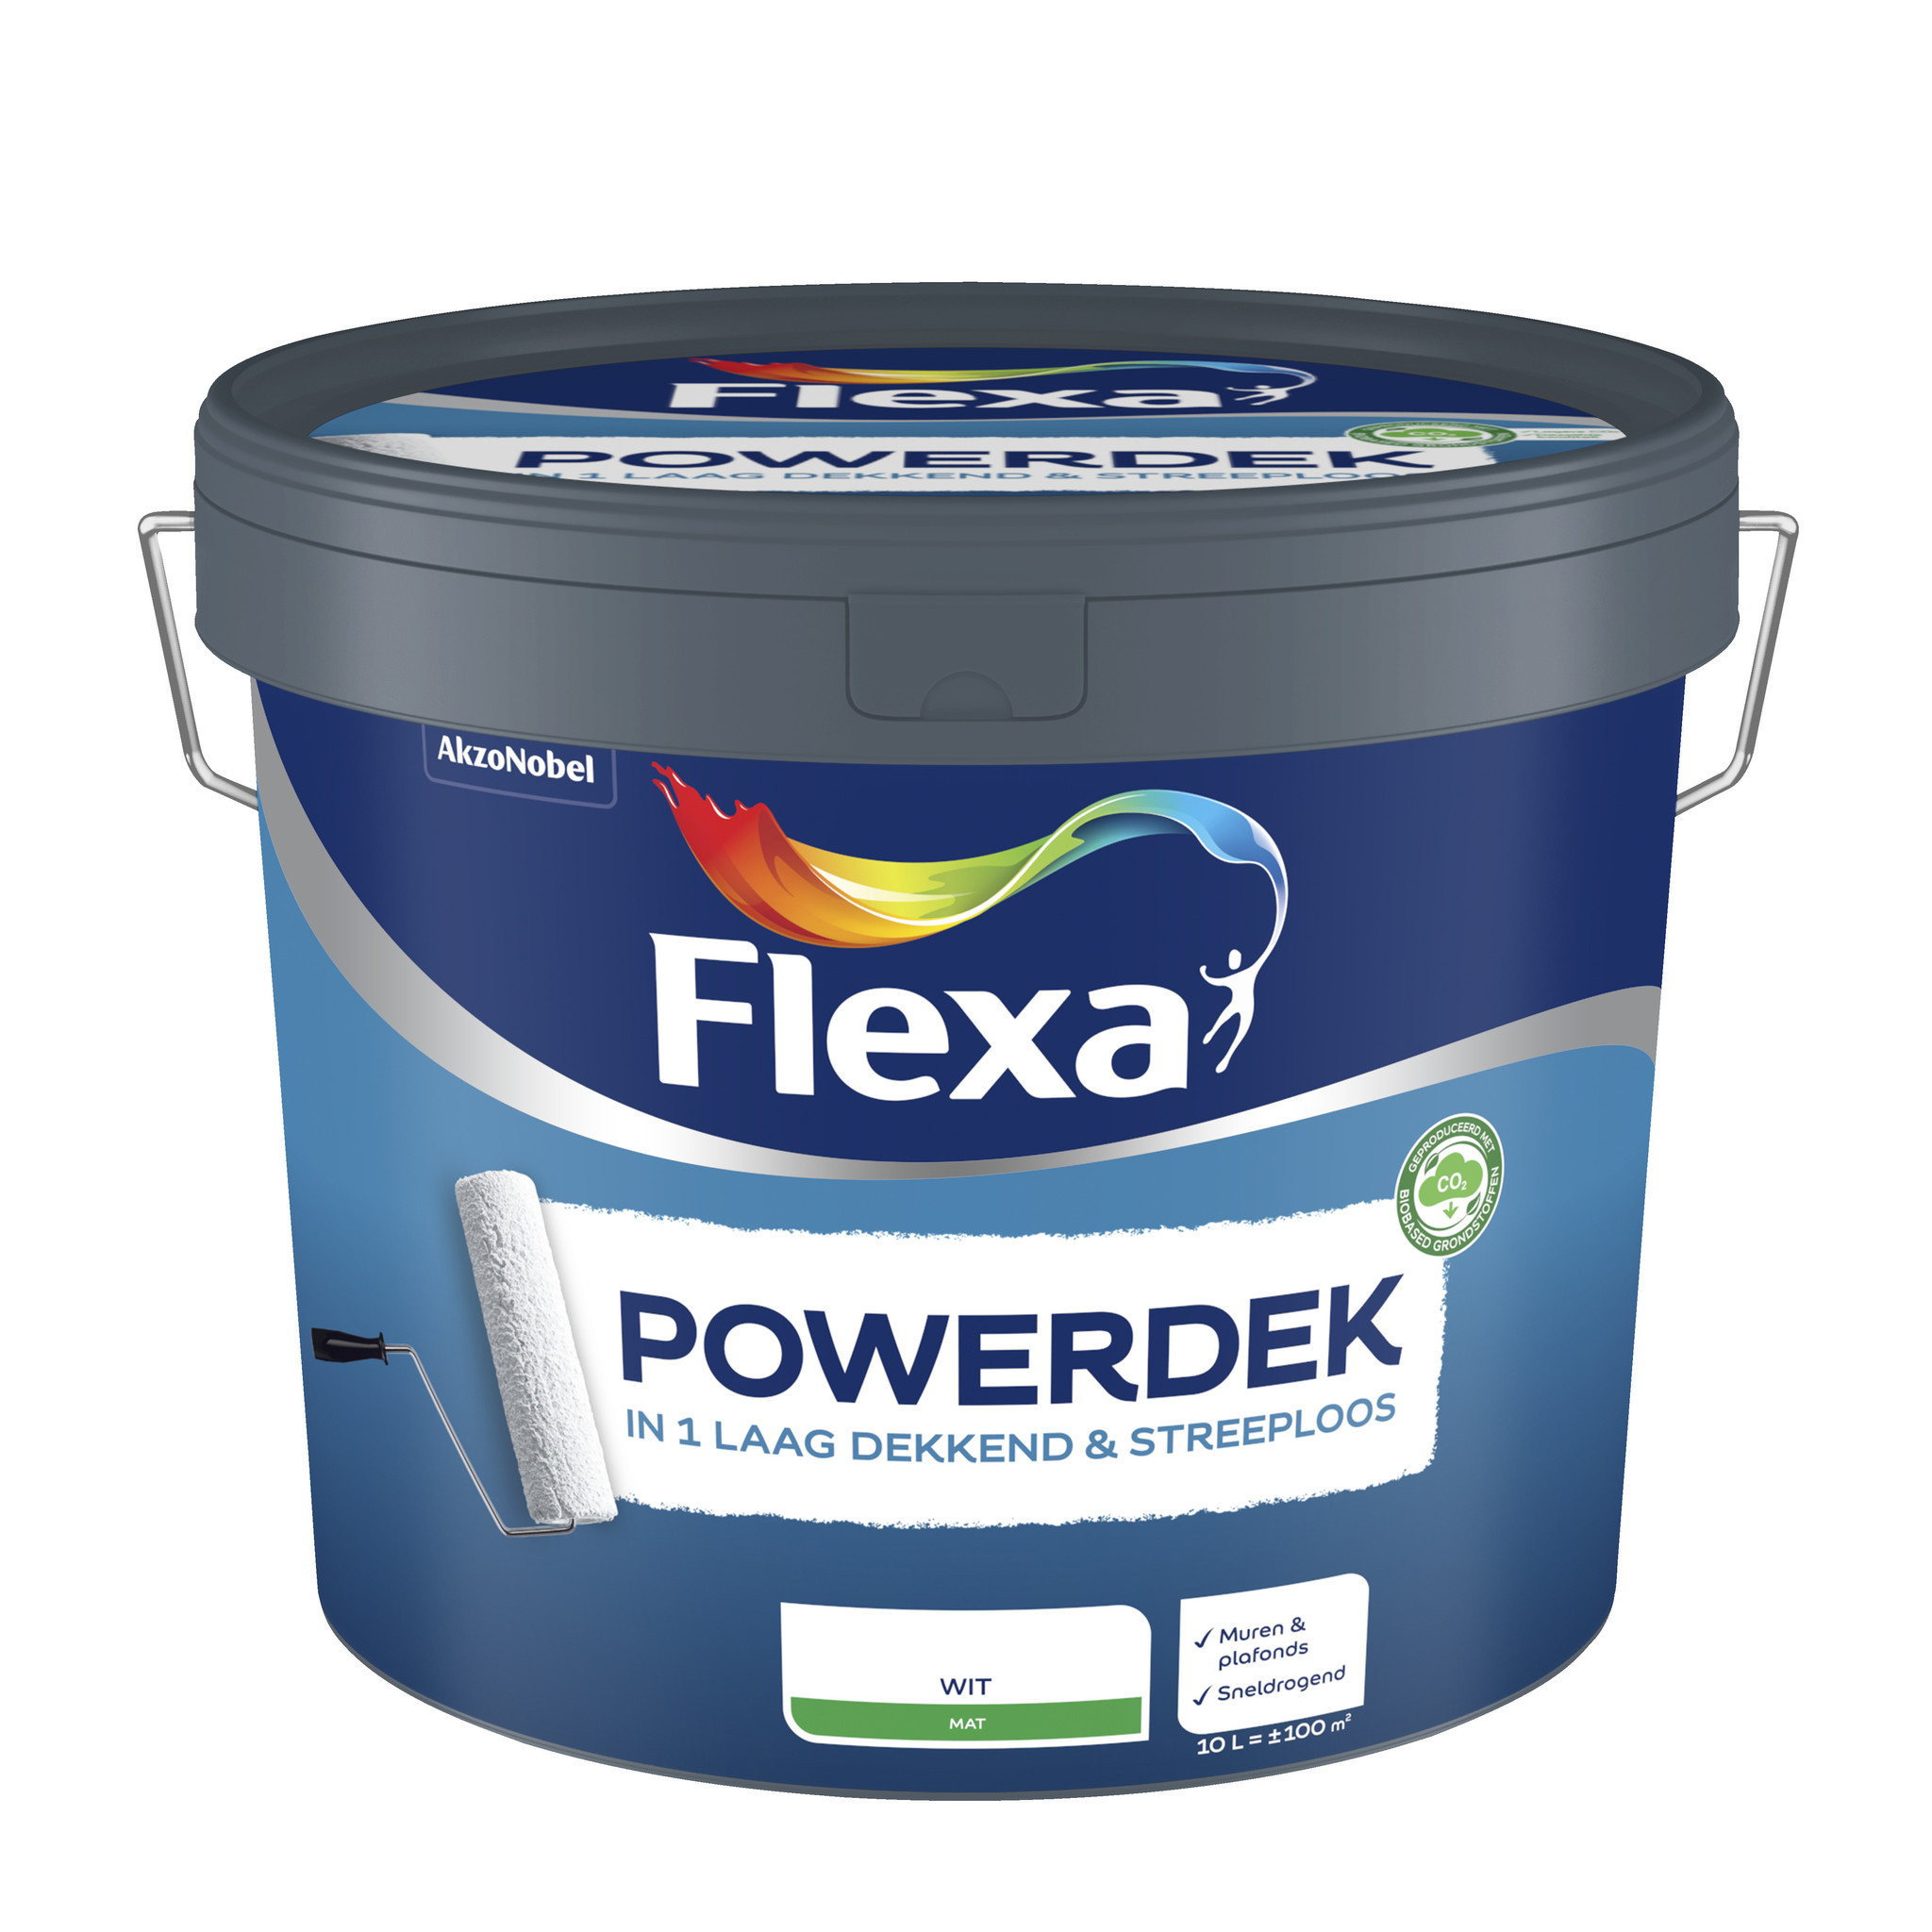 Flexa Powerdek Muren & Plafonds - Wit